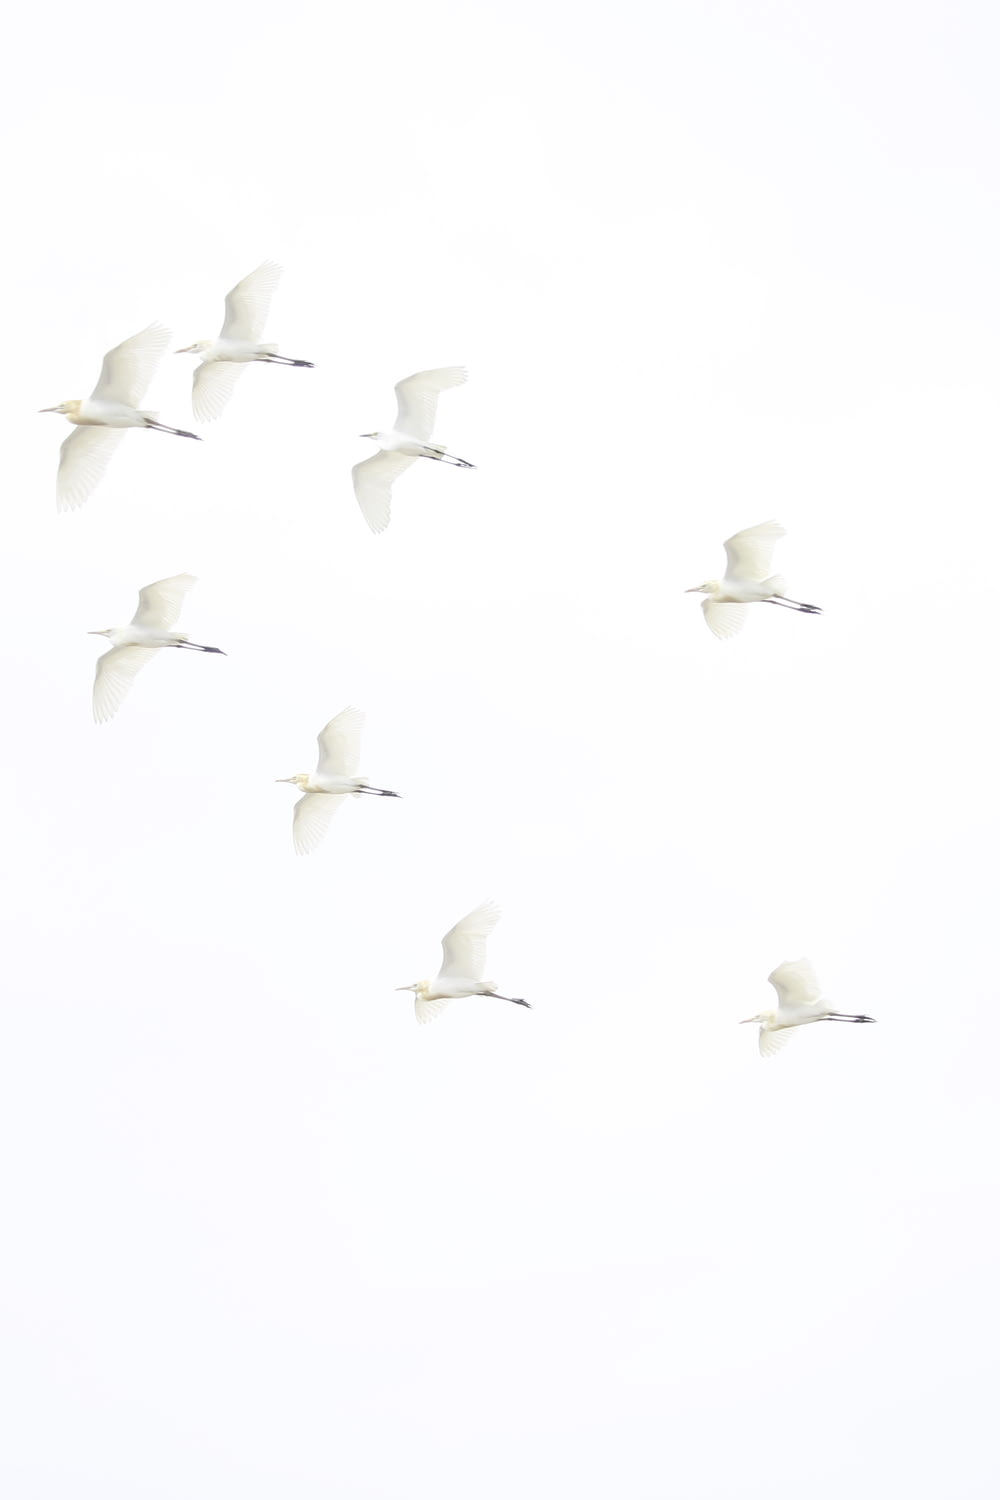 Ein Vogelschwarm fliegt durch einen weißen Himmel